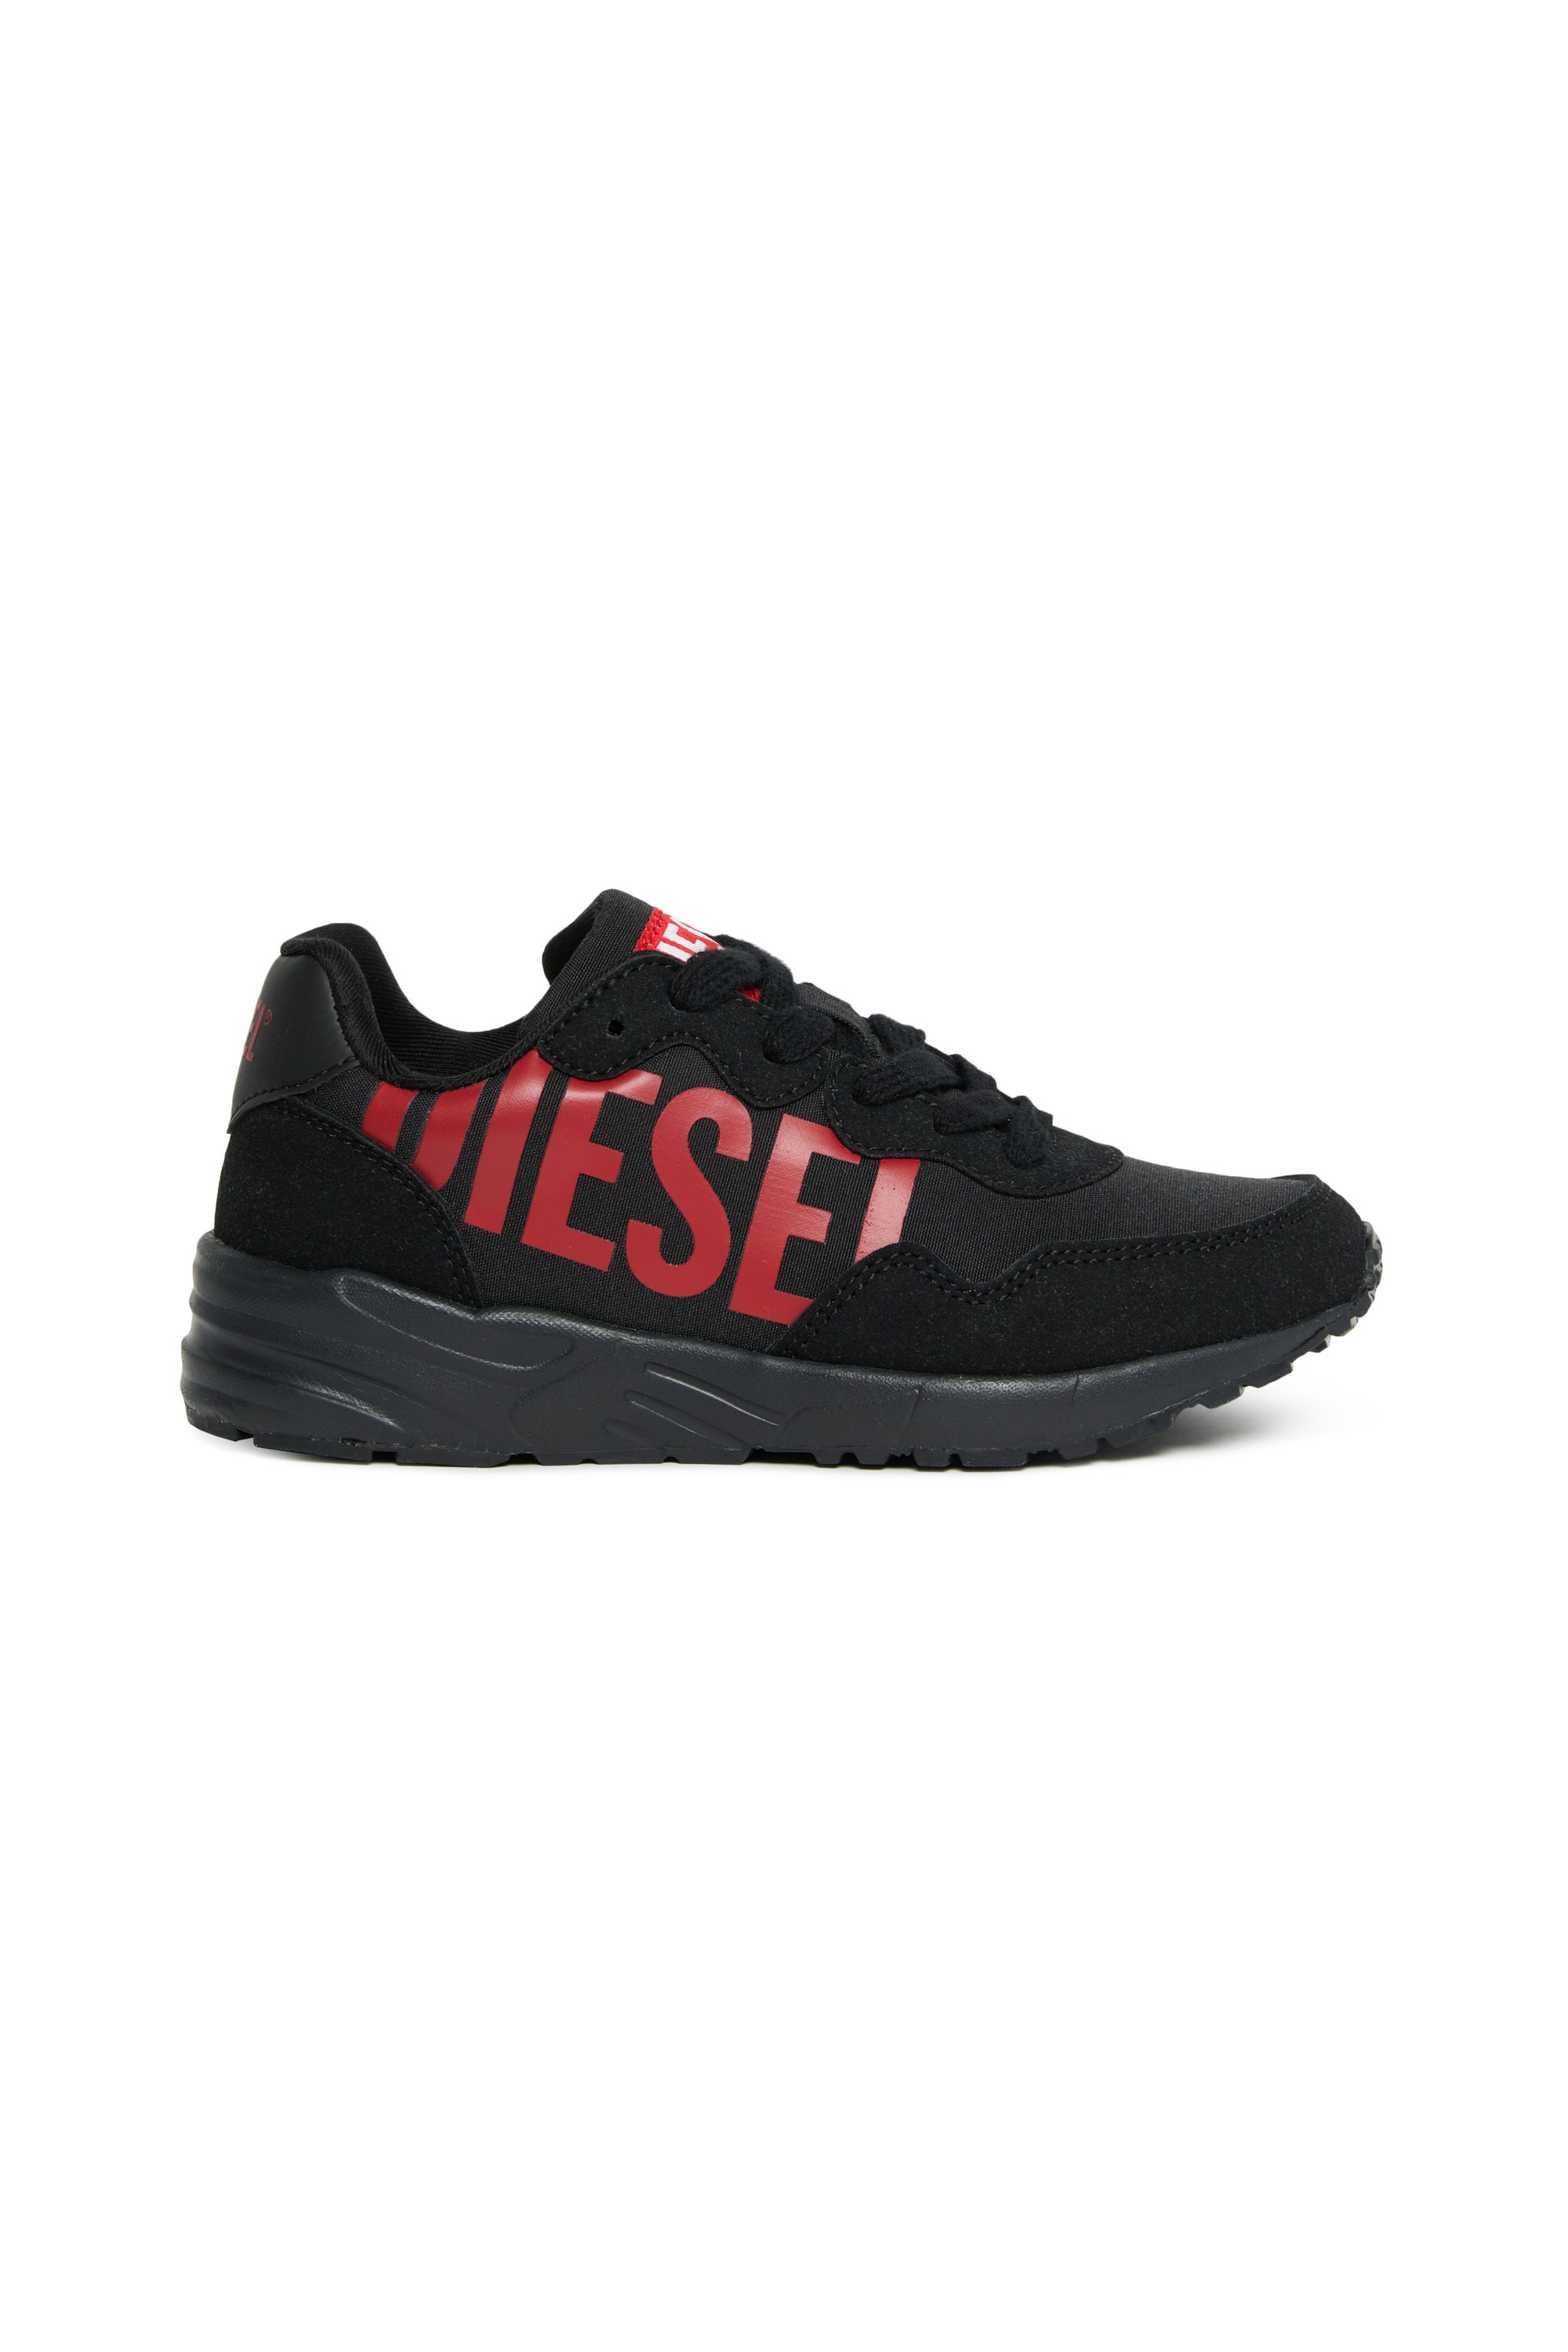 Diesel - Nylon sneakers with shiny Diesel print - Footwear - Unisex - Multicolor